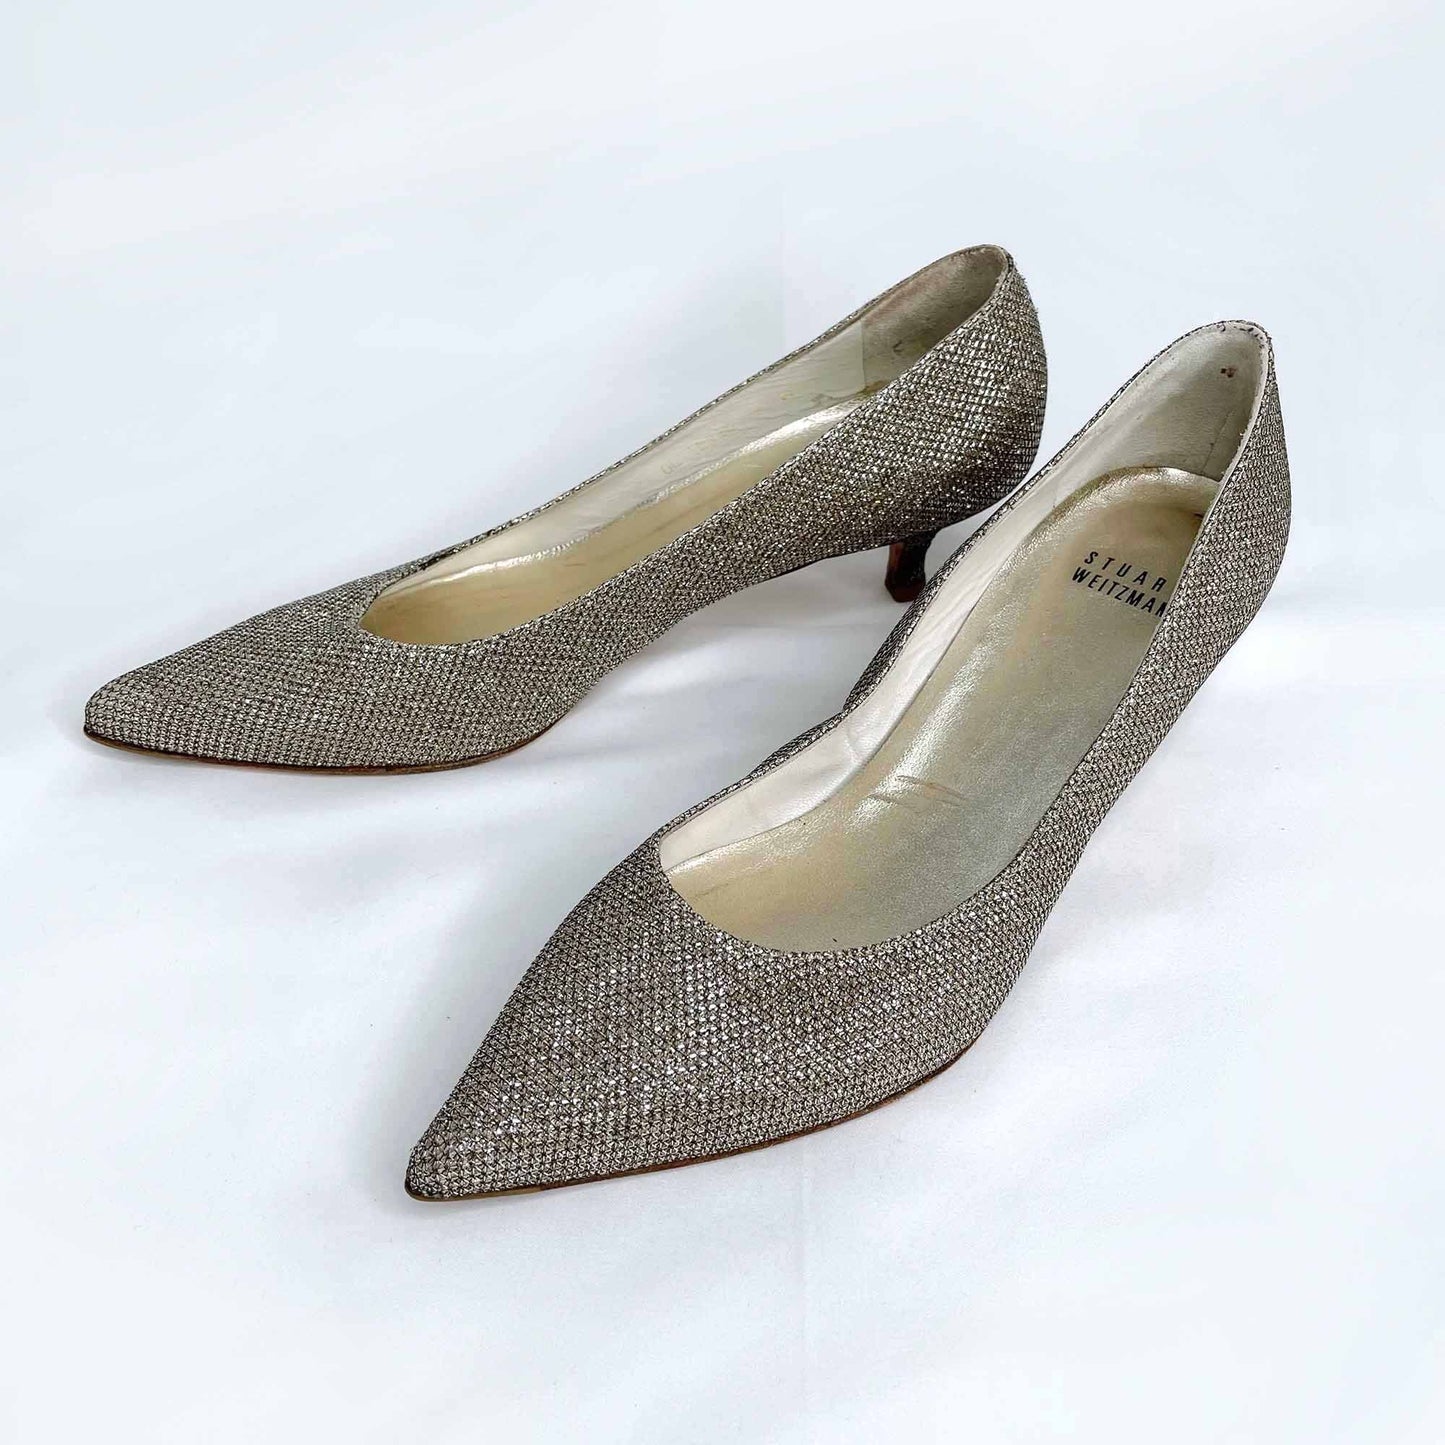 stuart weitzman poco platinum sparkly kitten heels - size 7